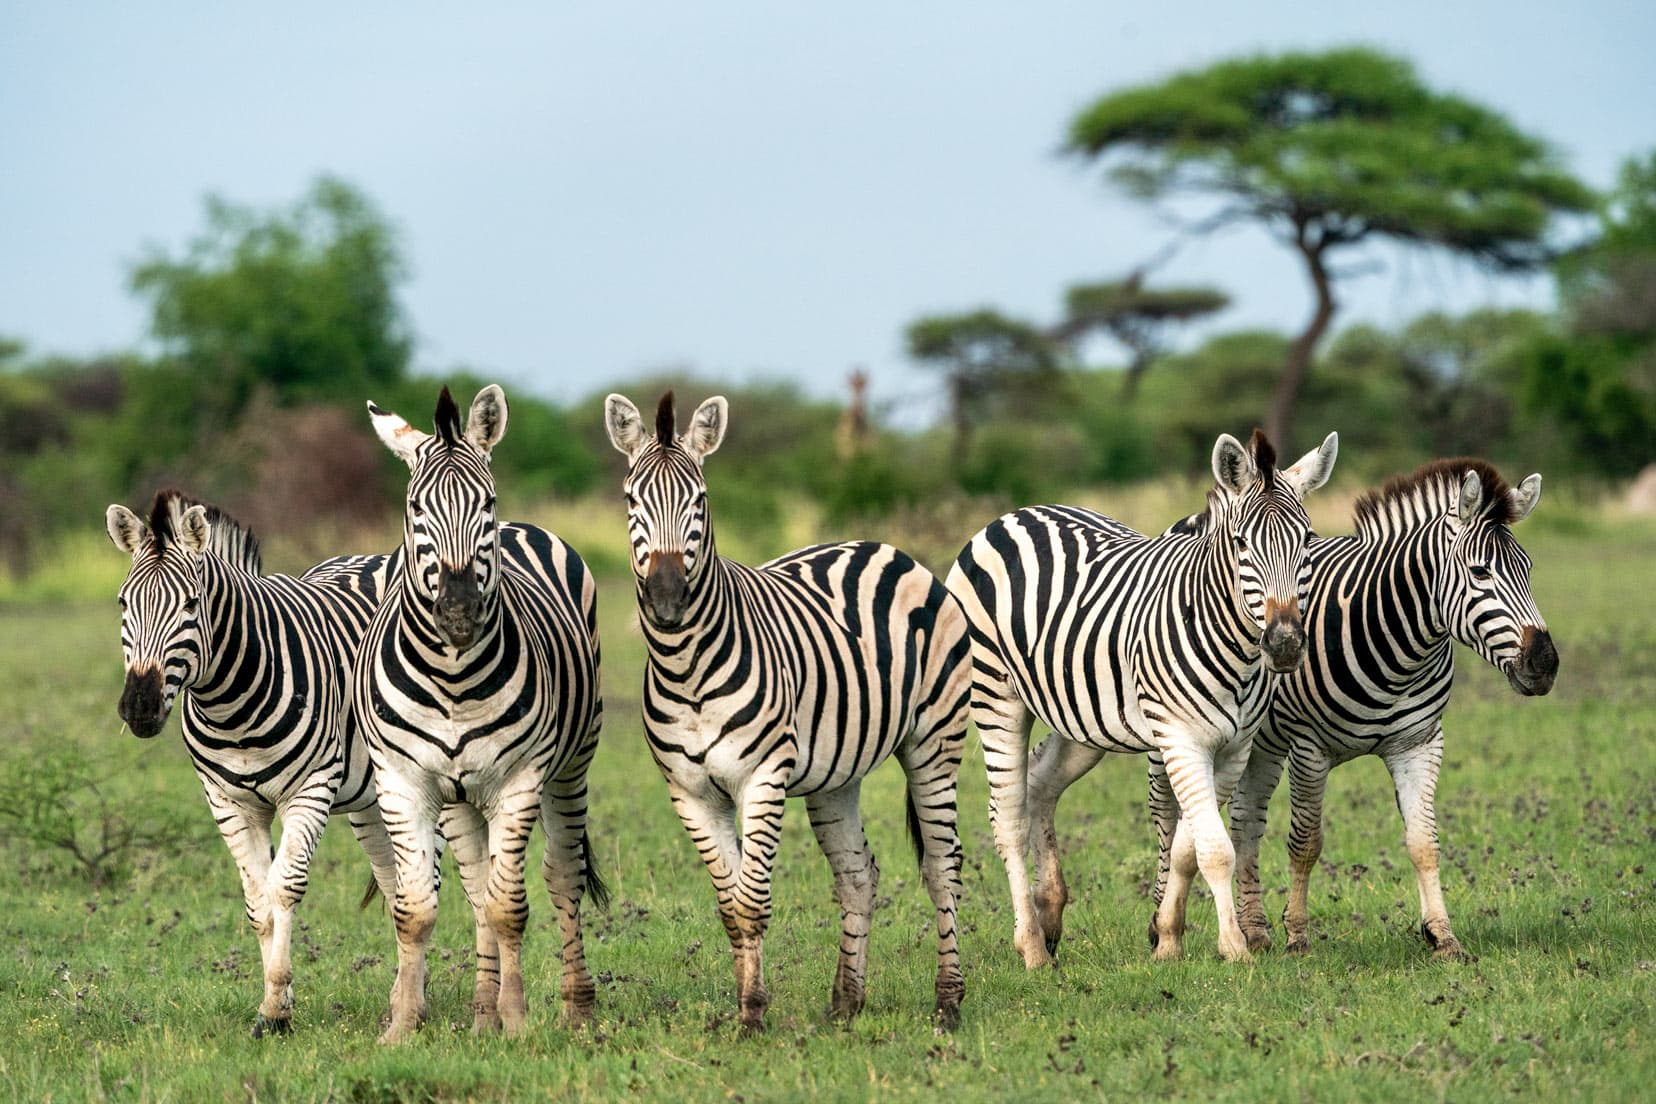 zebras on grass in Kruger